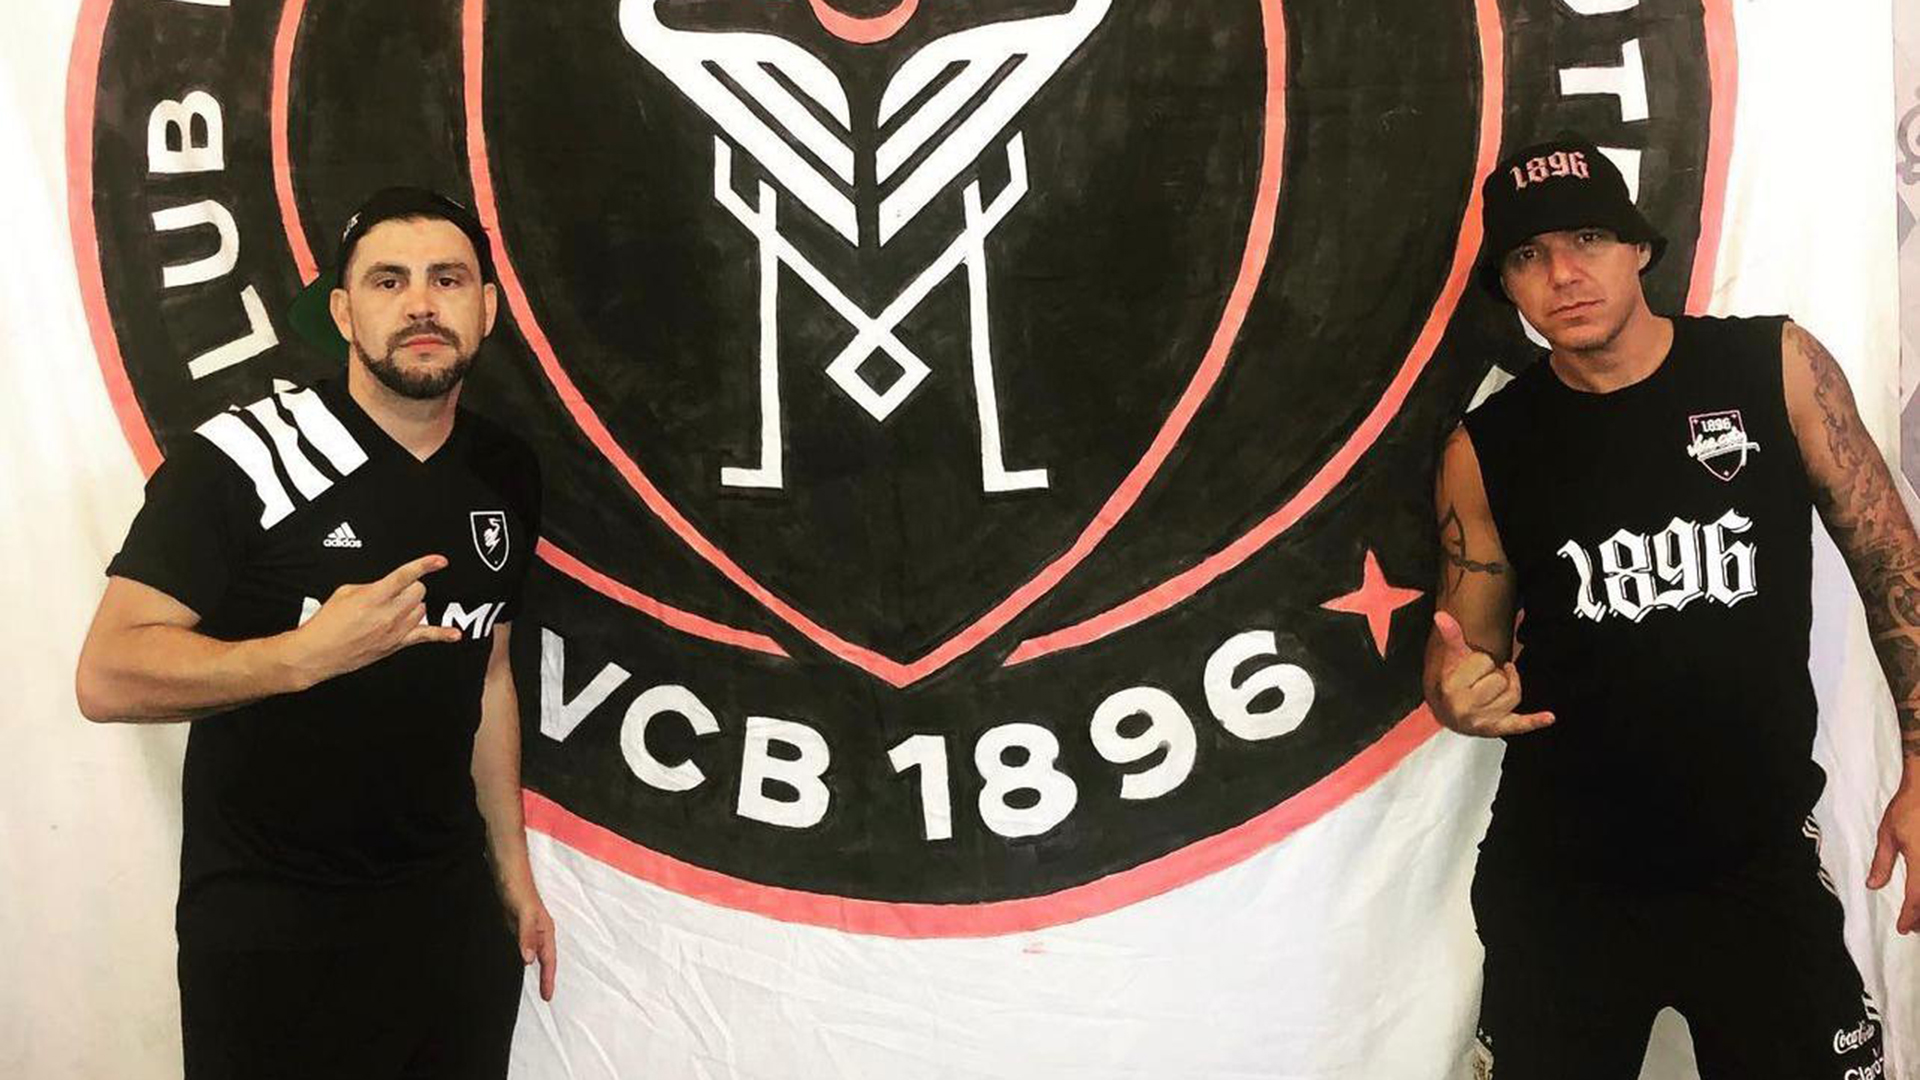 Cachito with a fellow Inter Miami fan